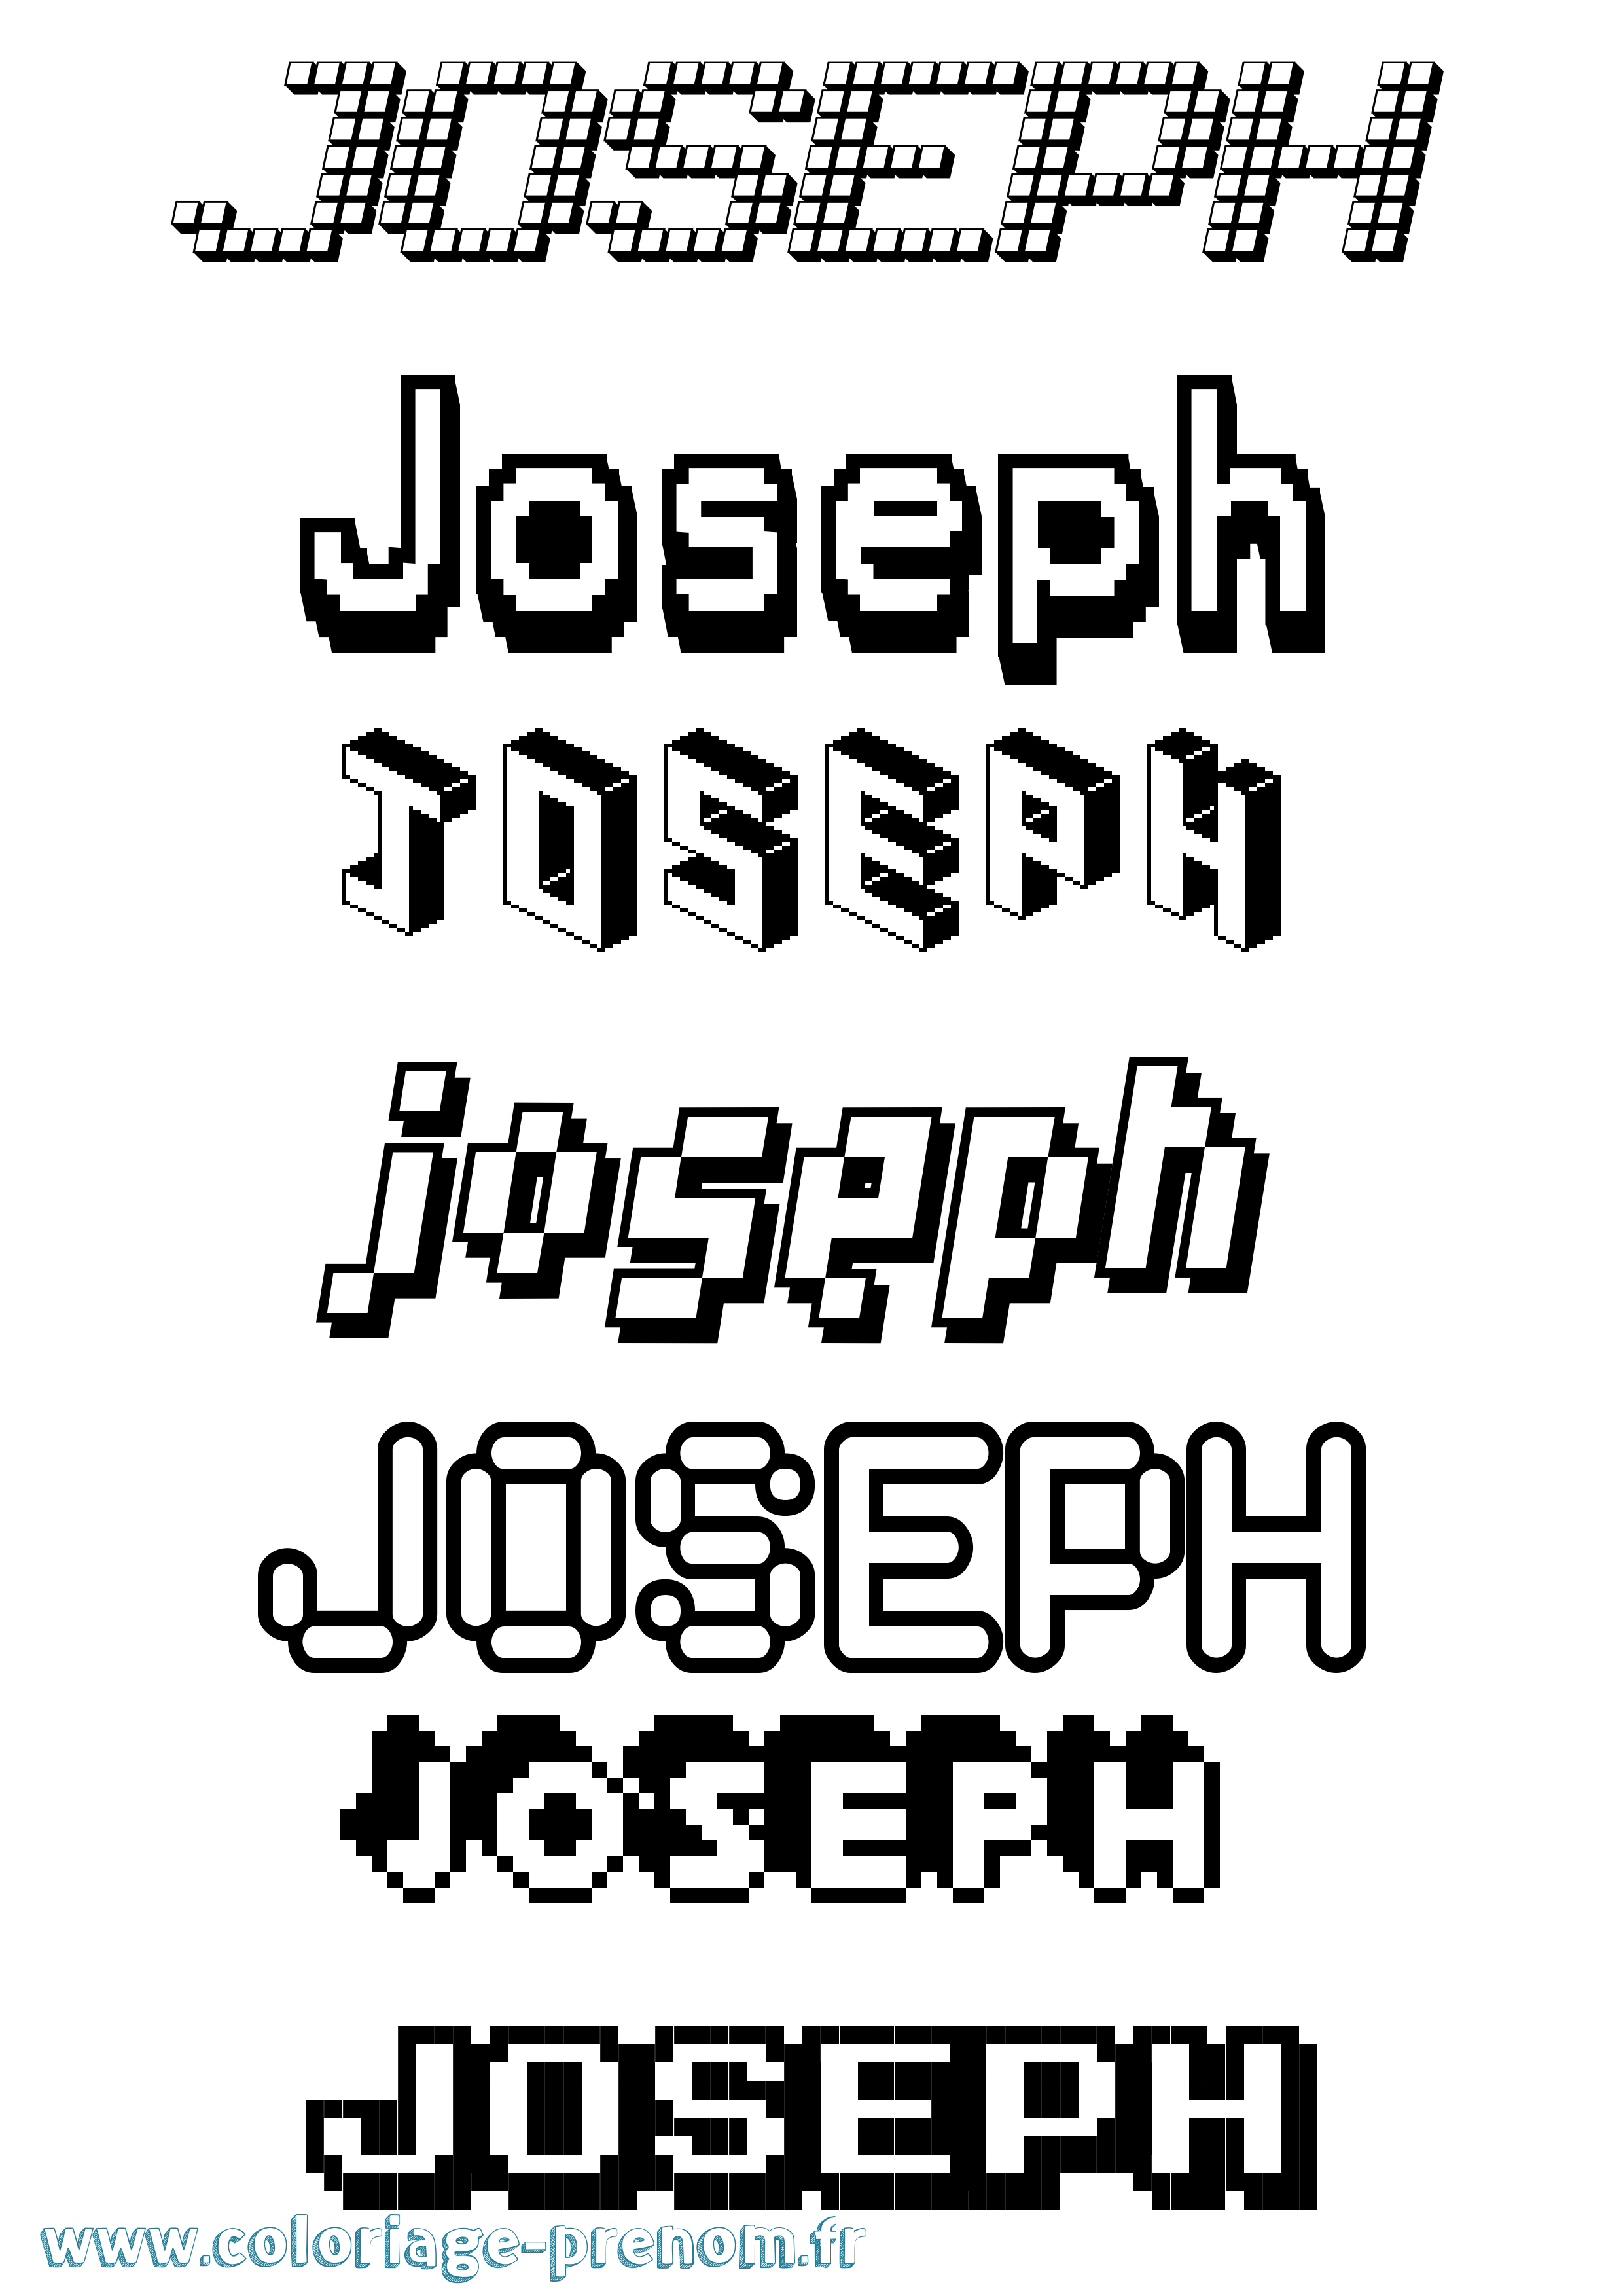 Coloriage prénom Joseph Pixel